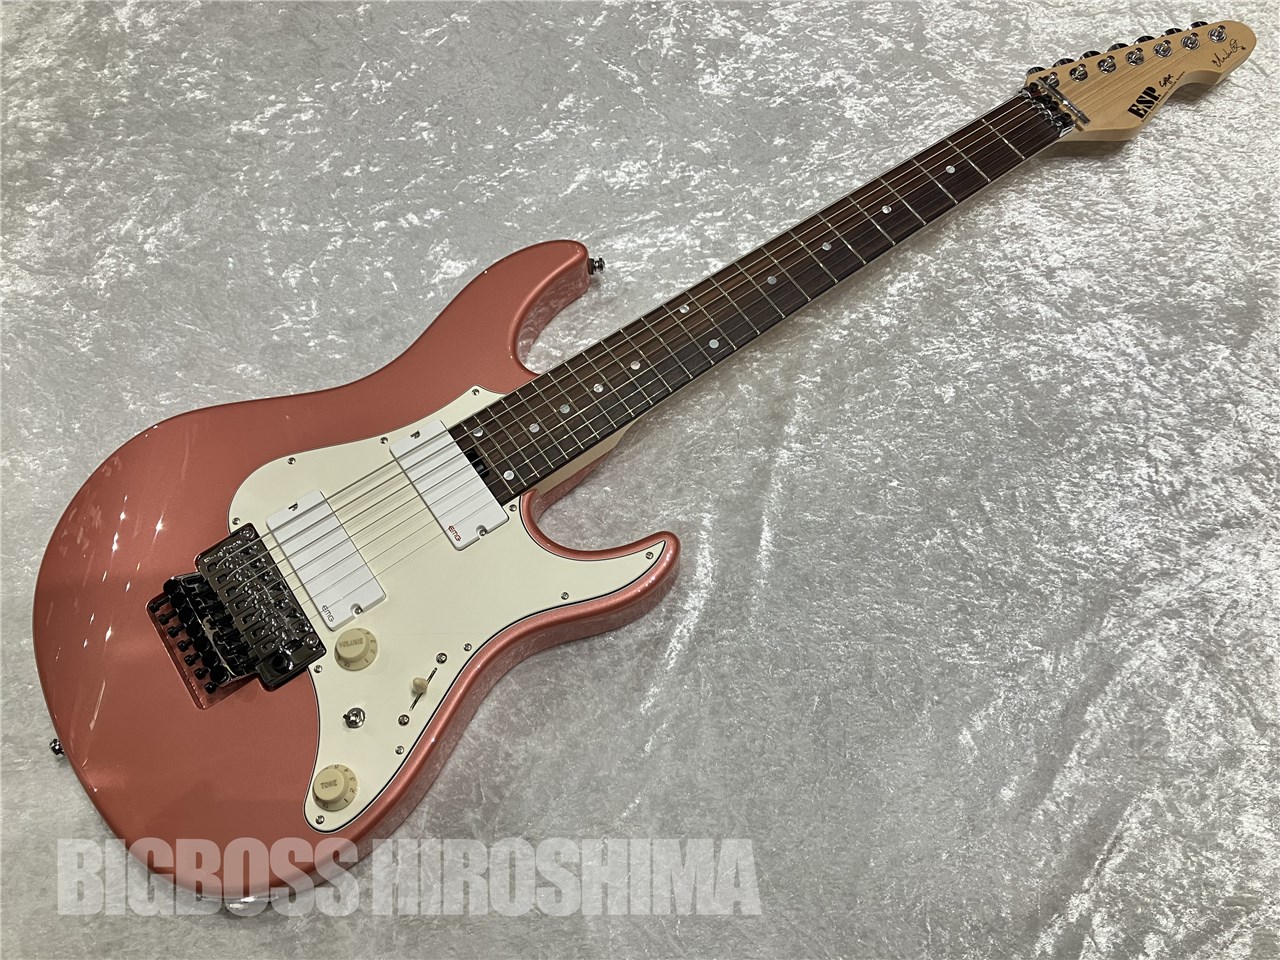 【即納可能】ESP(イーエスピー) SNAPPER-7 Fujioka Custom (藤岡幹大モデル)【7弦ギター】広島店